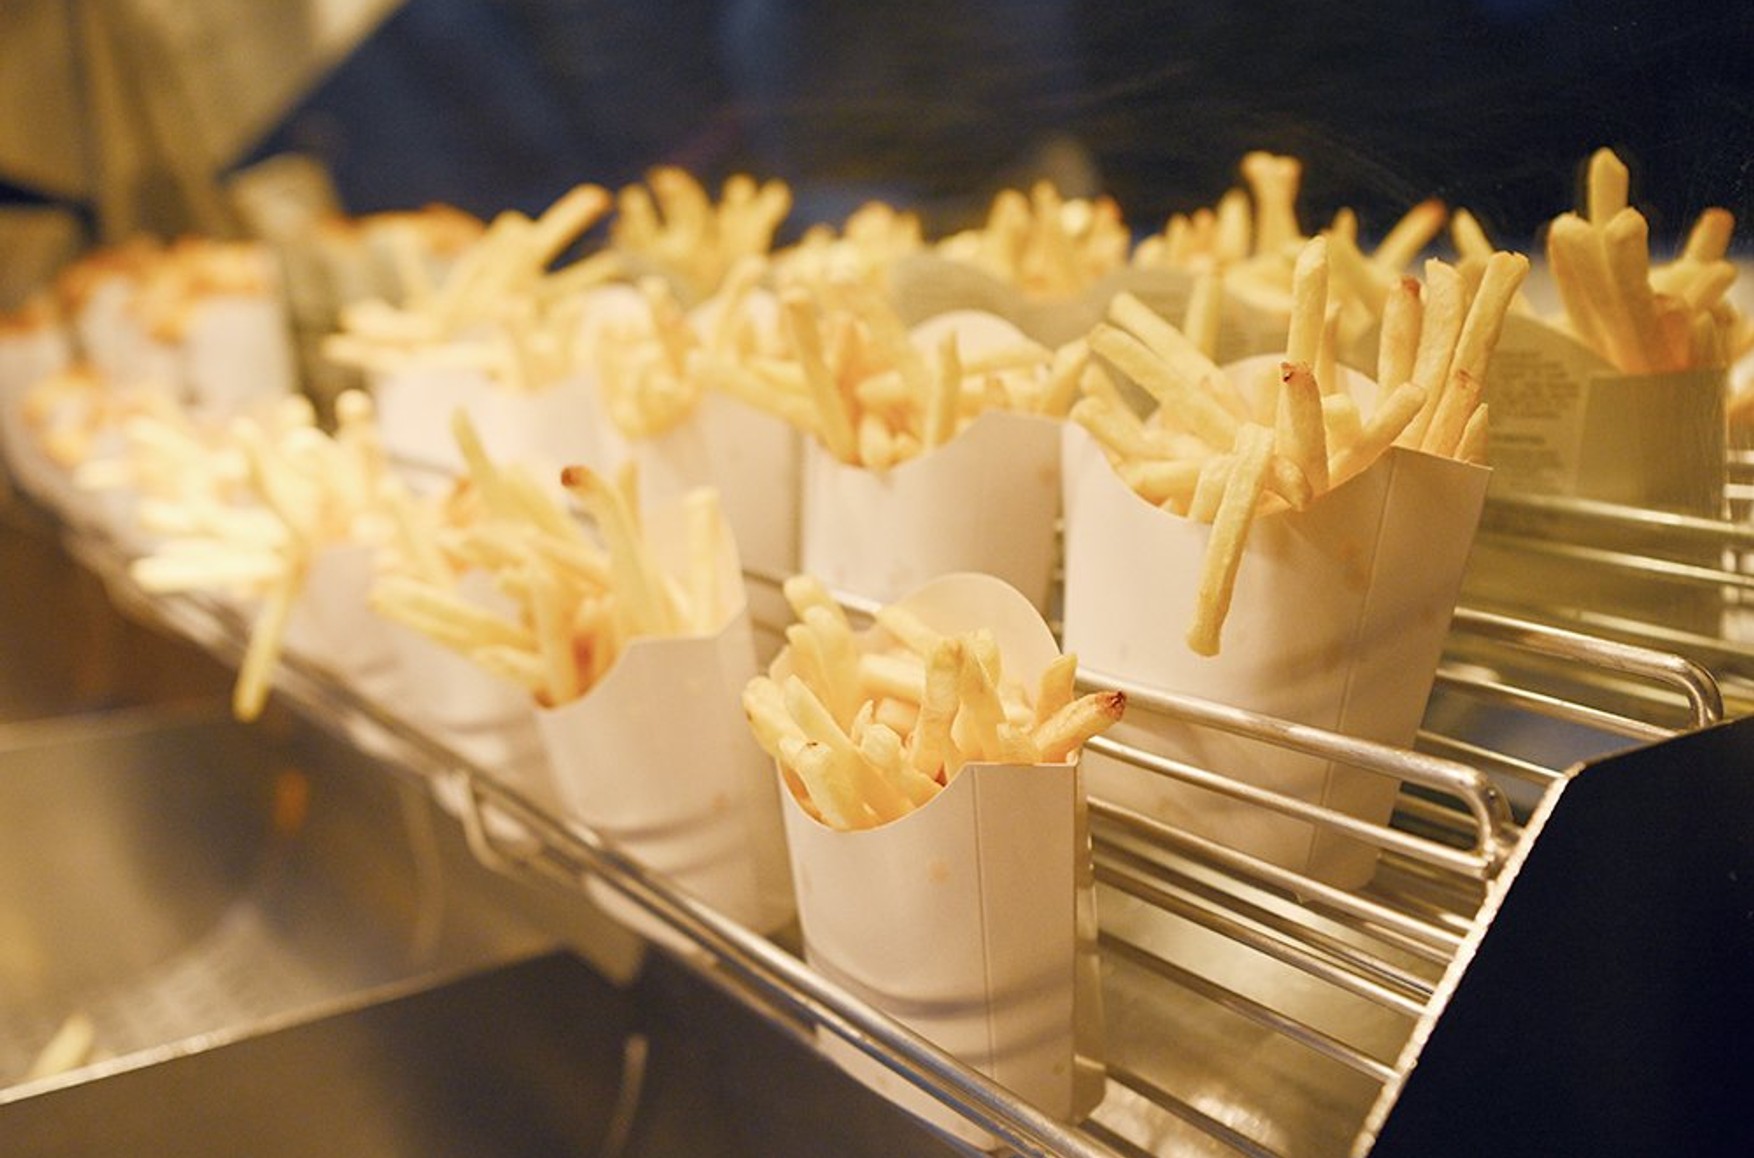 «Вкусно и точка» не смогла сохранить в меню картофель-фри из-за невозможности повторить бизнес-процессы «Макдоналдса»